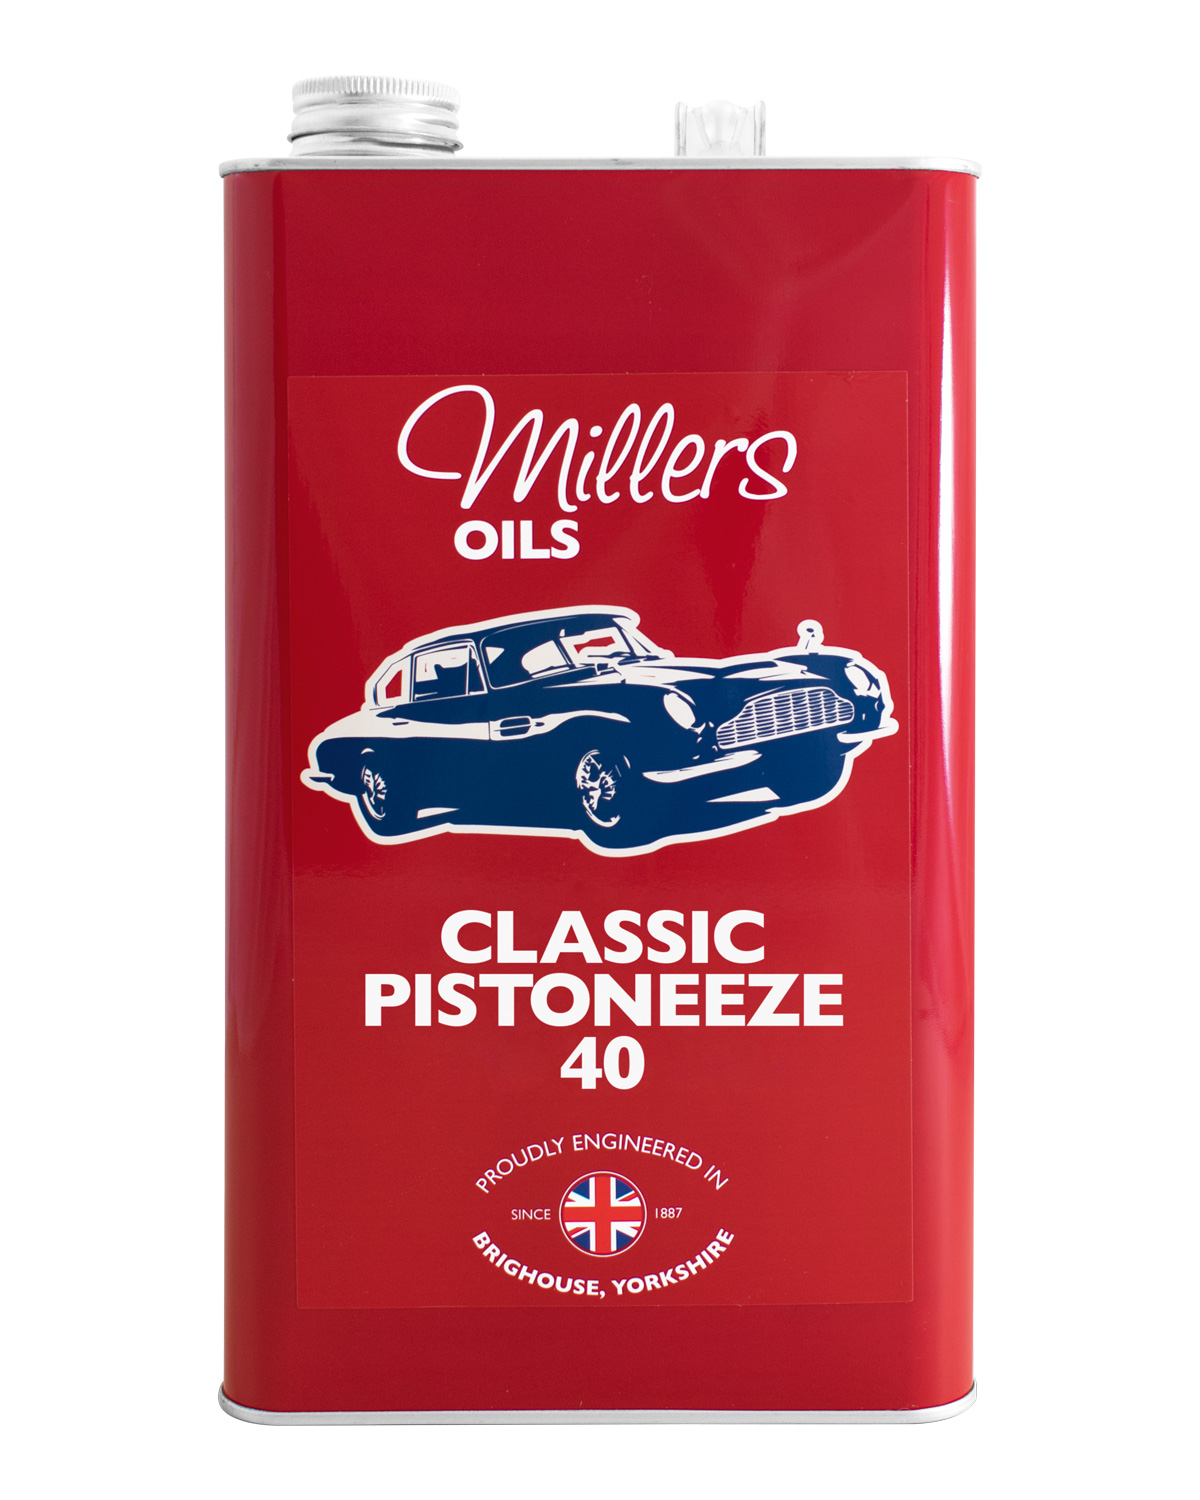 Millers Oils Classic Pistoneeze 40, 5 Liter